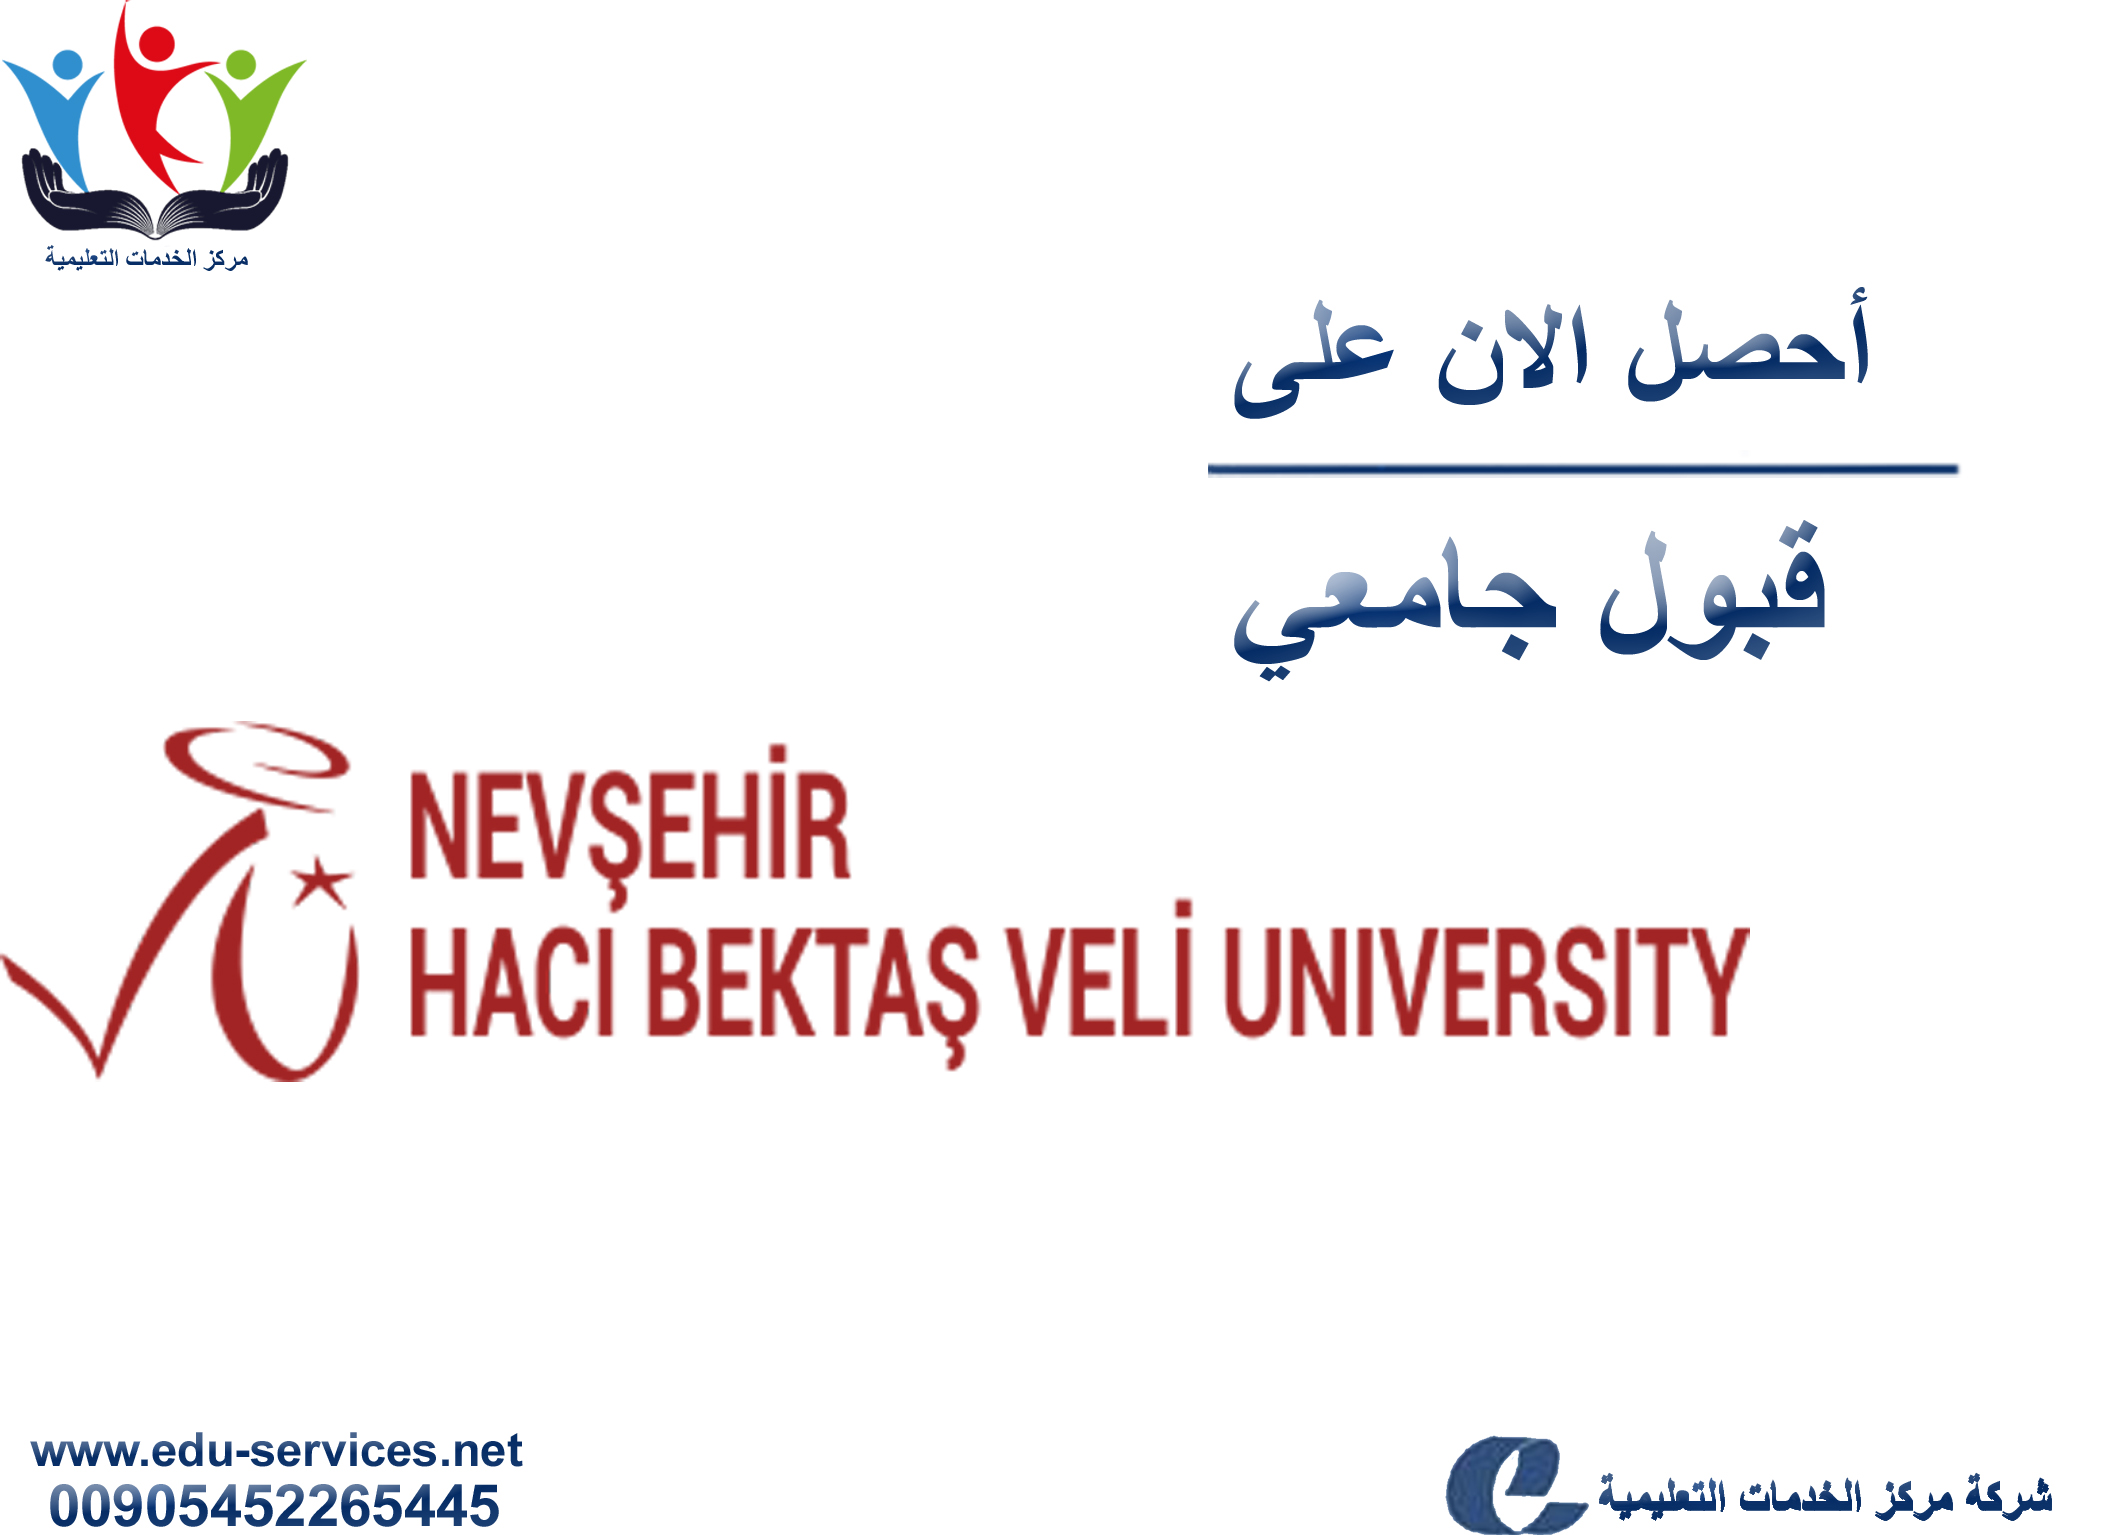 افتتاح التسجيل في جامعة نيفشهير حجي بكتاش للعام 2018-2019